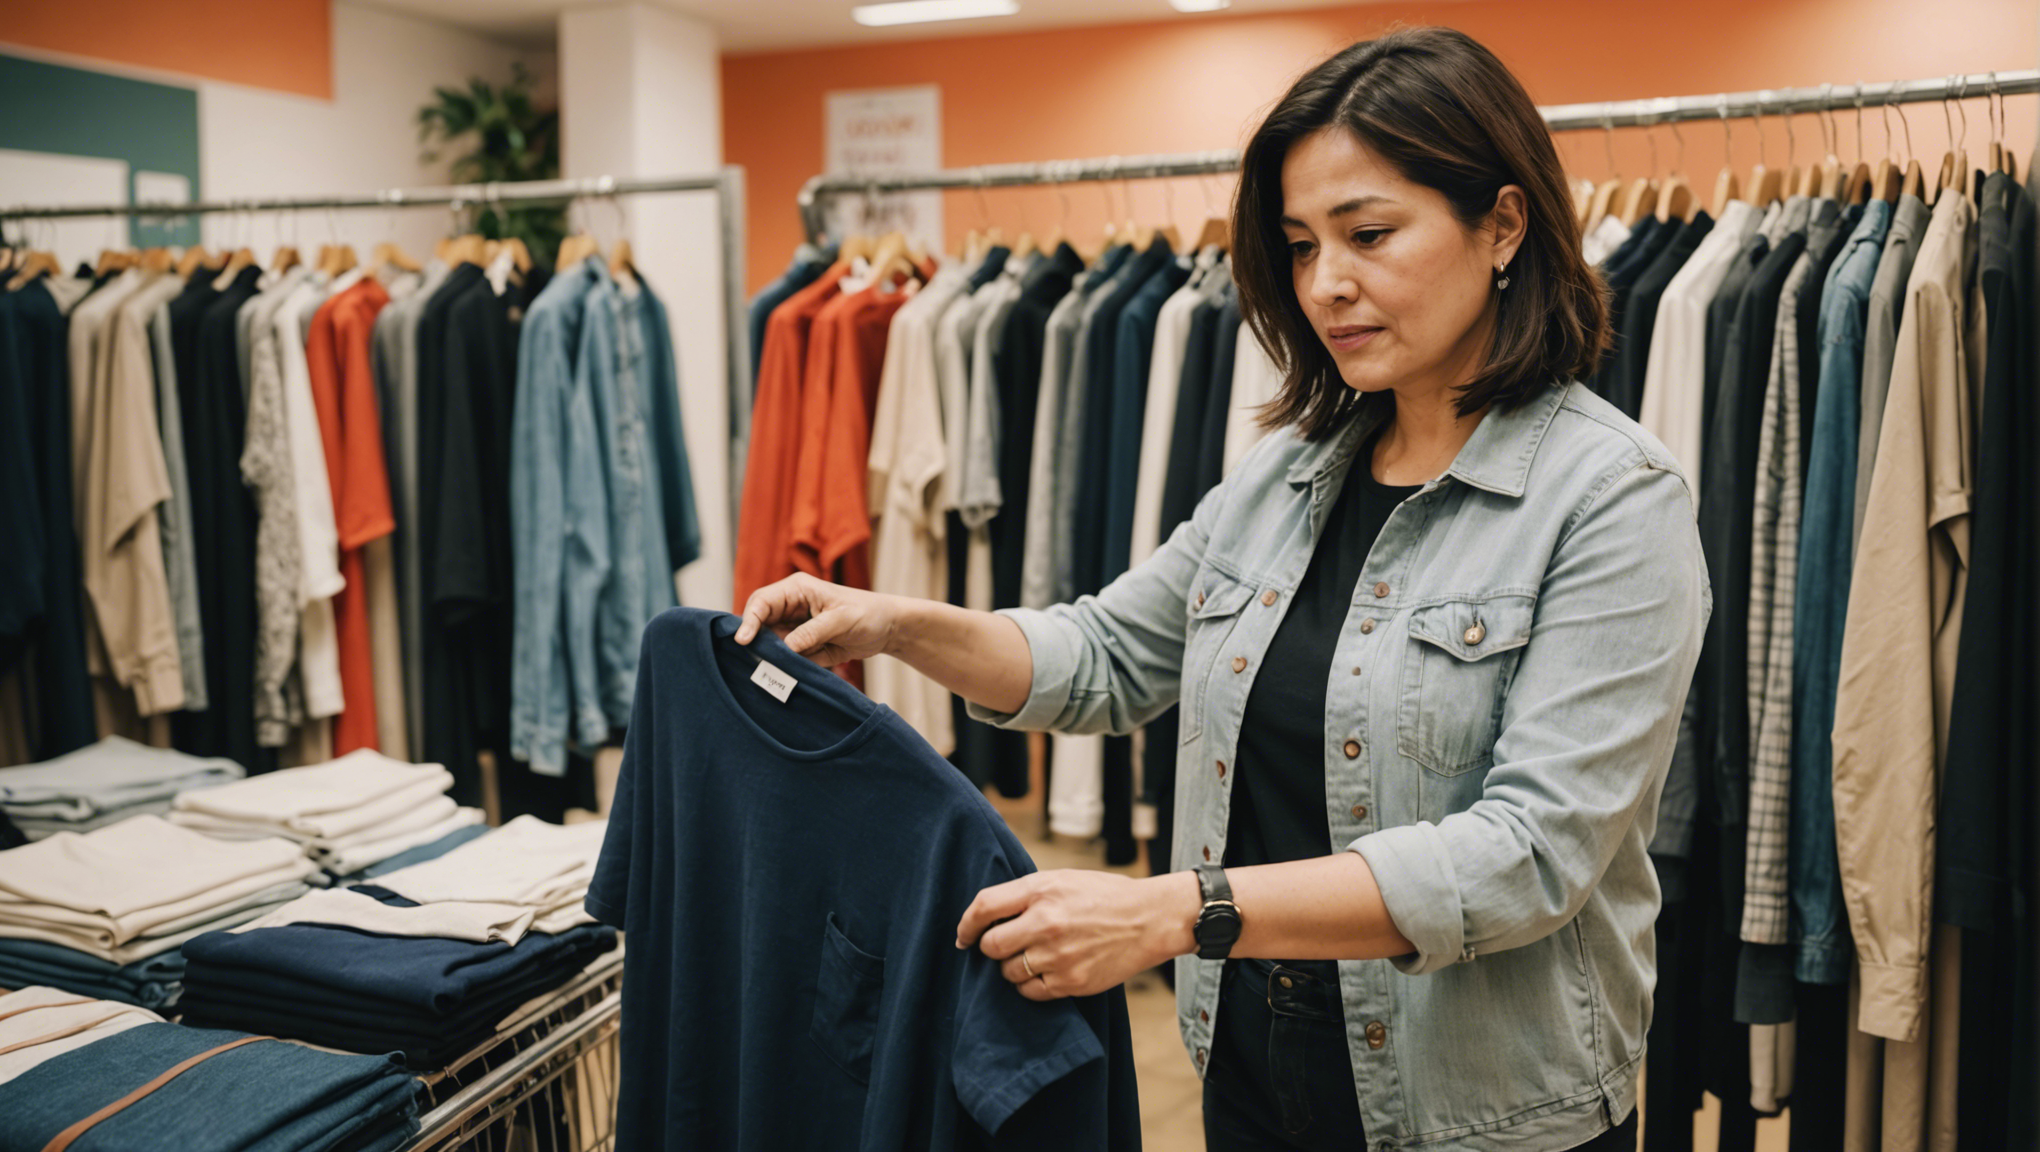 découvrez nos conseils pour trouver la bonne taille de vêtements pour femme à l'échelle internationale et éviter les mauvaises surprises lors de vos achats en ligne ou à l'étranger.